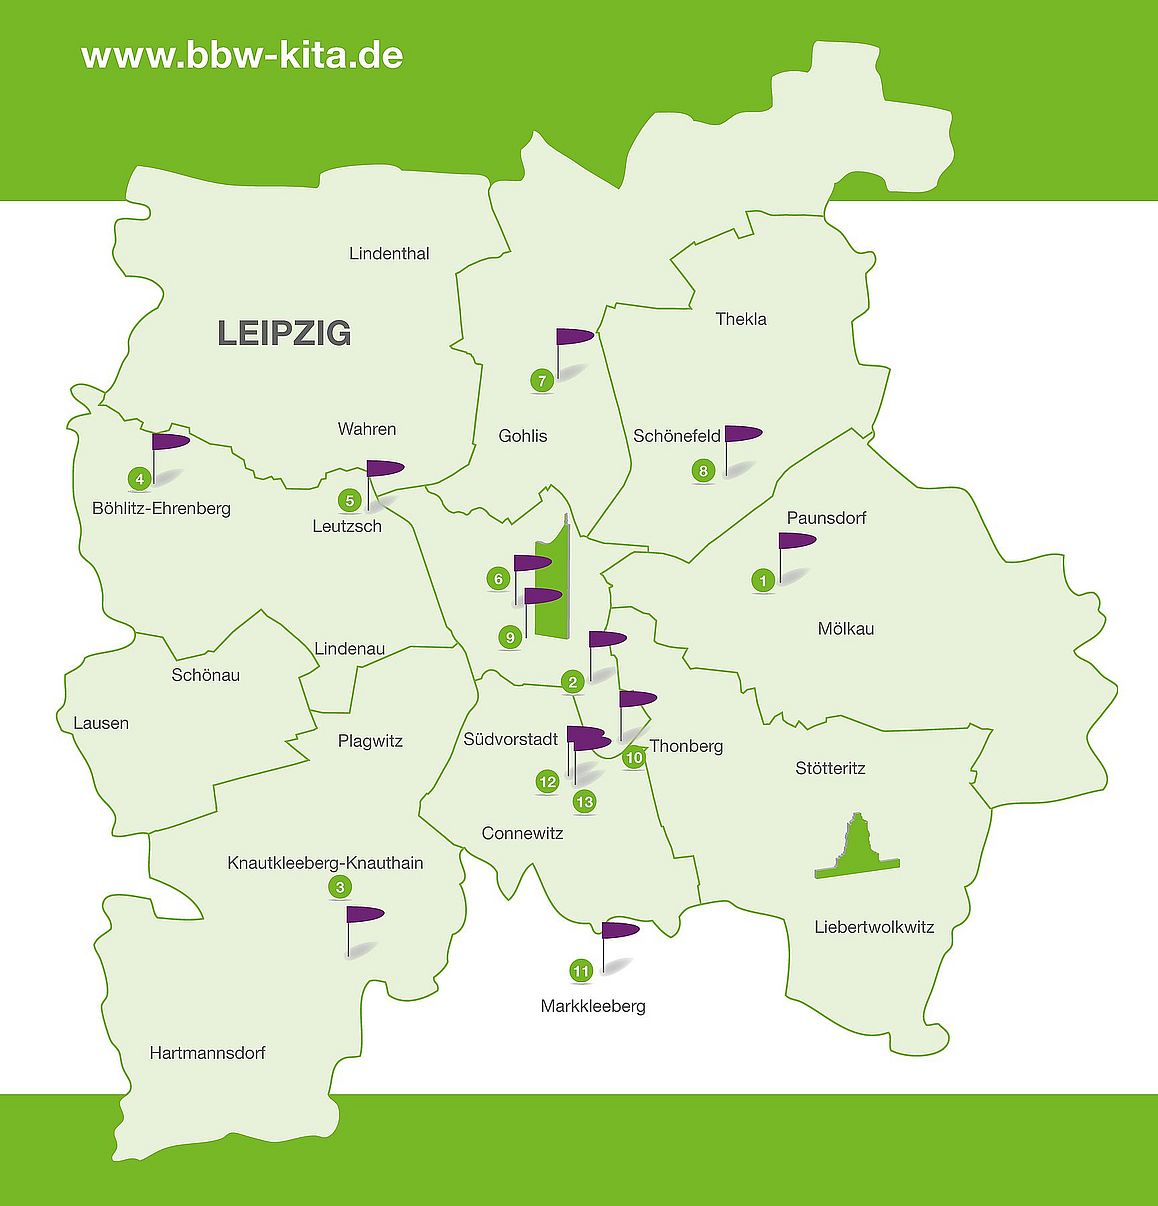 Übersichtskarte von Leipzig mit eingezeichneten Fahnen für die Standorte der BBW-Kindertagesstätten